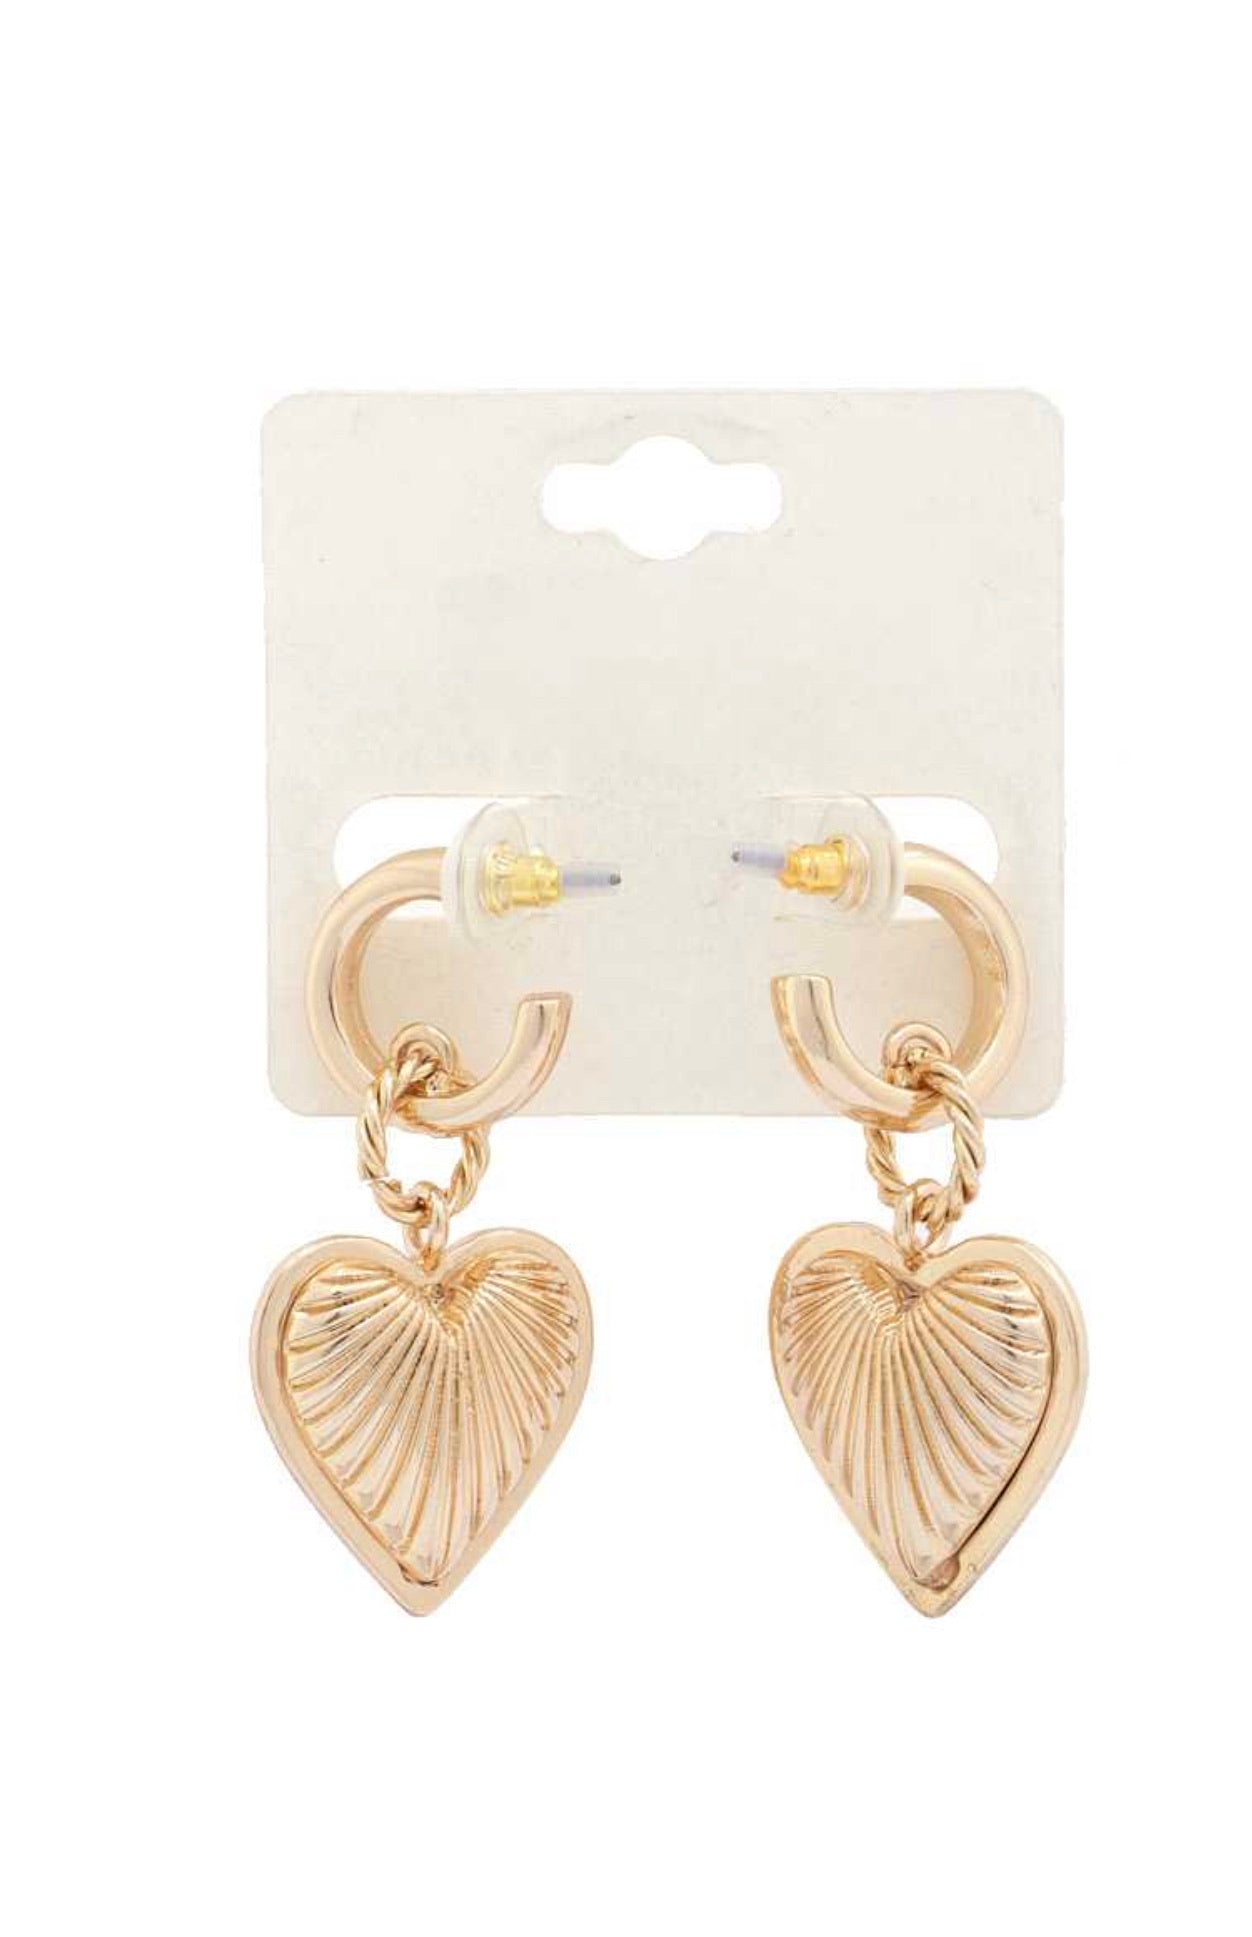 El corazón earrings